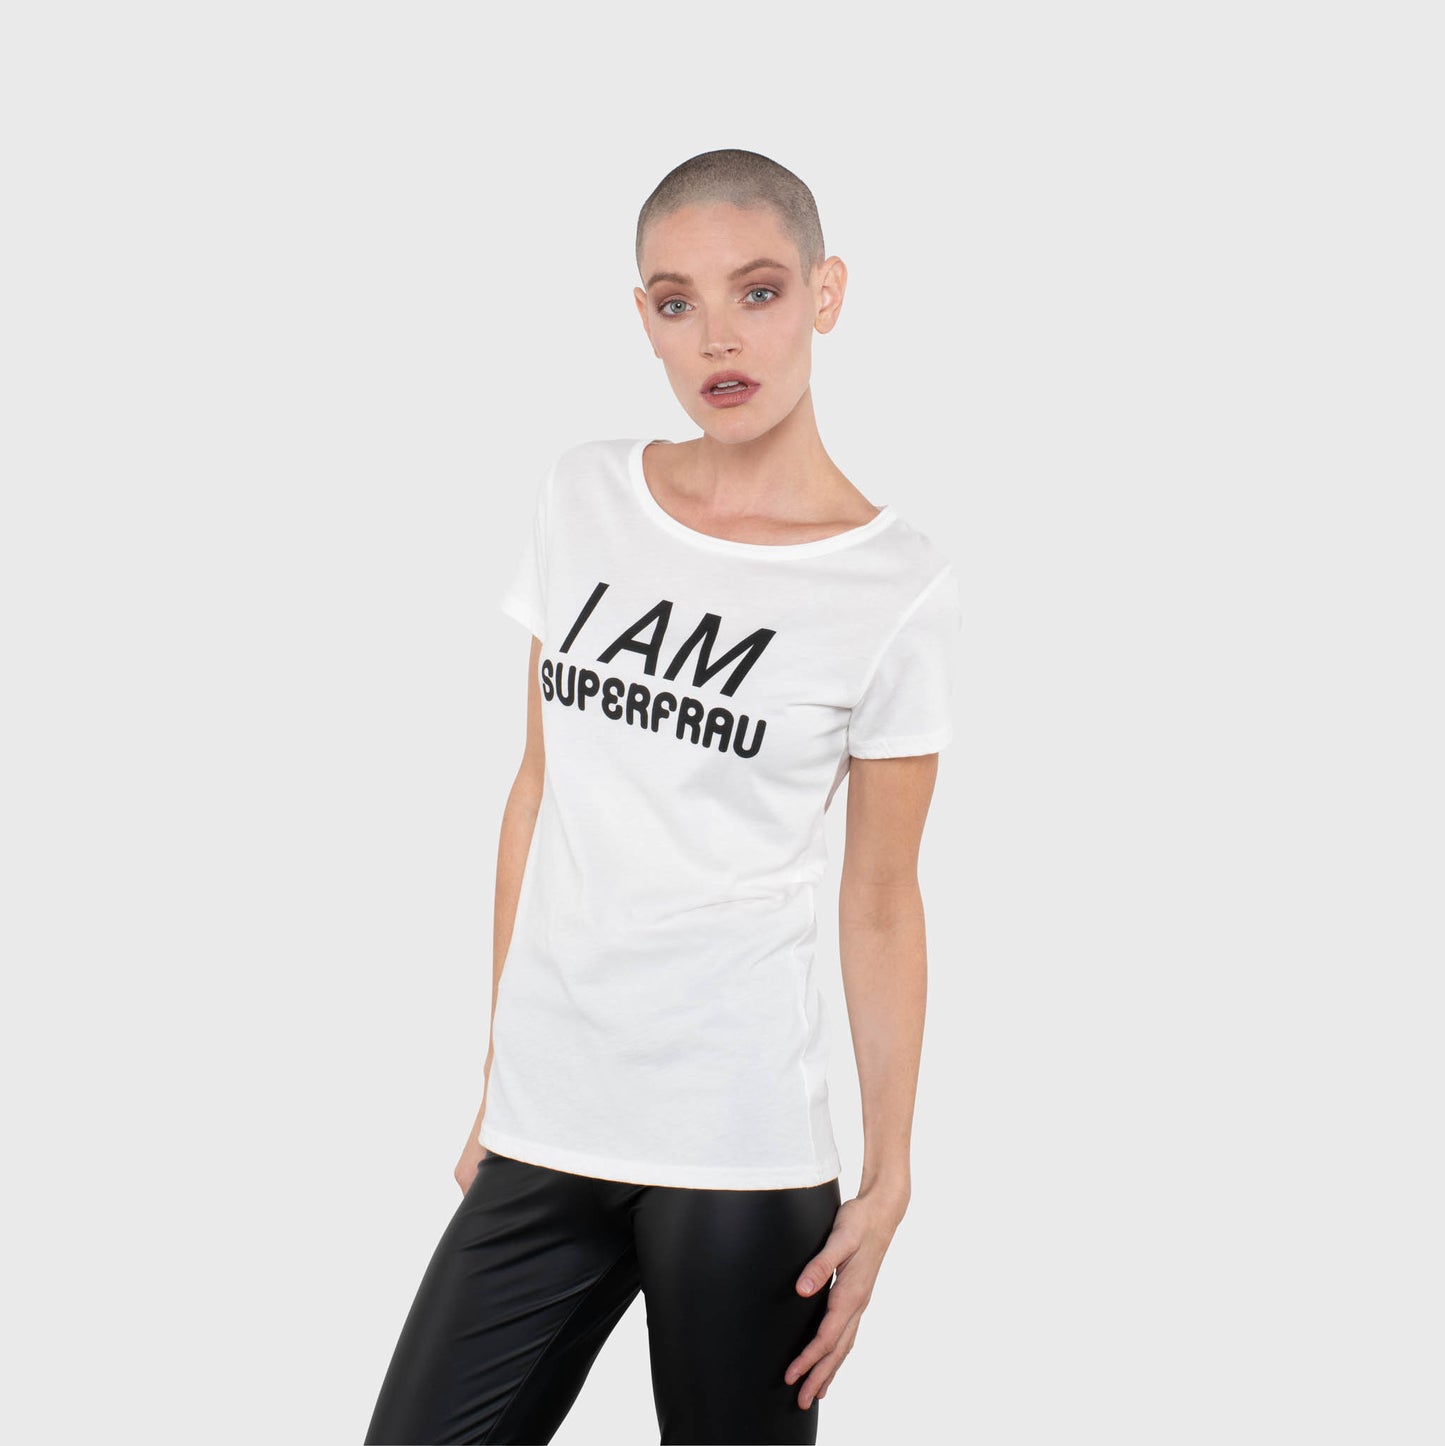 I AM Superfrau - Hero T-Shirt